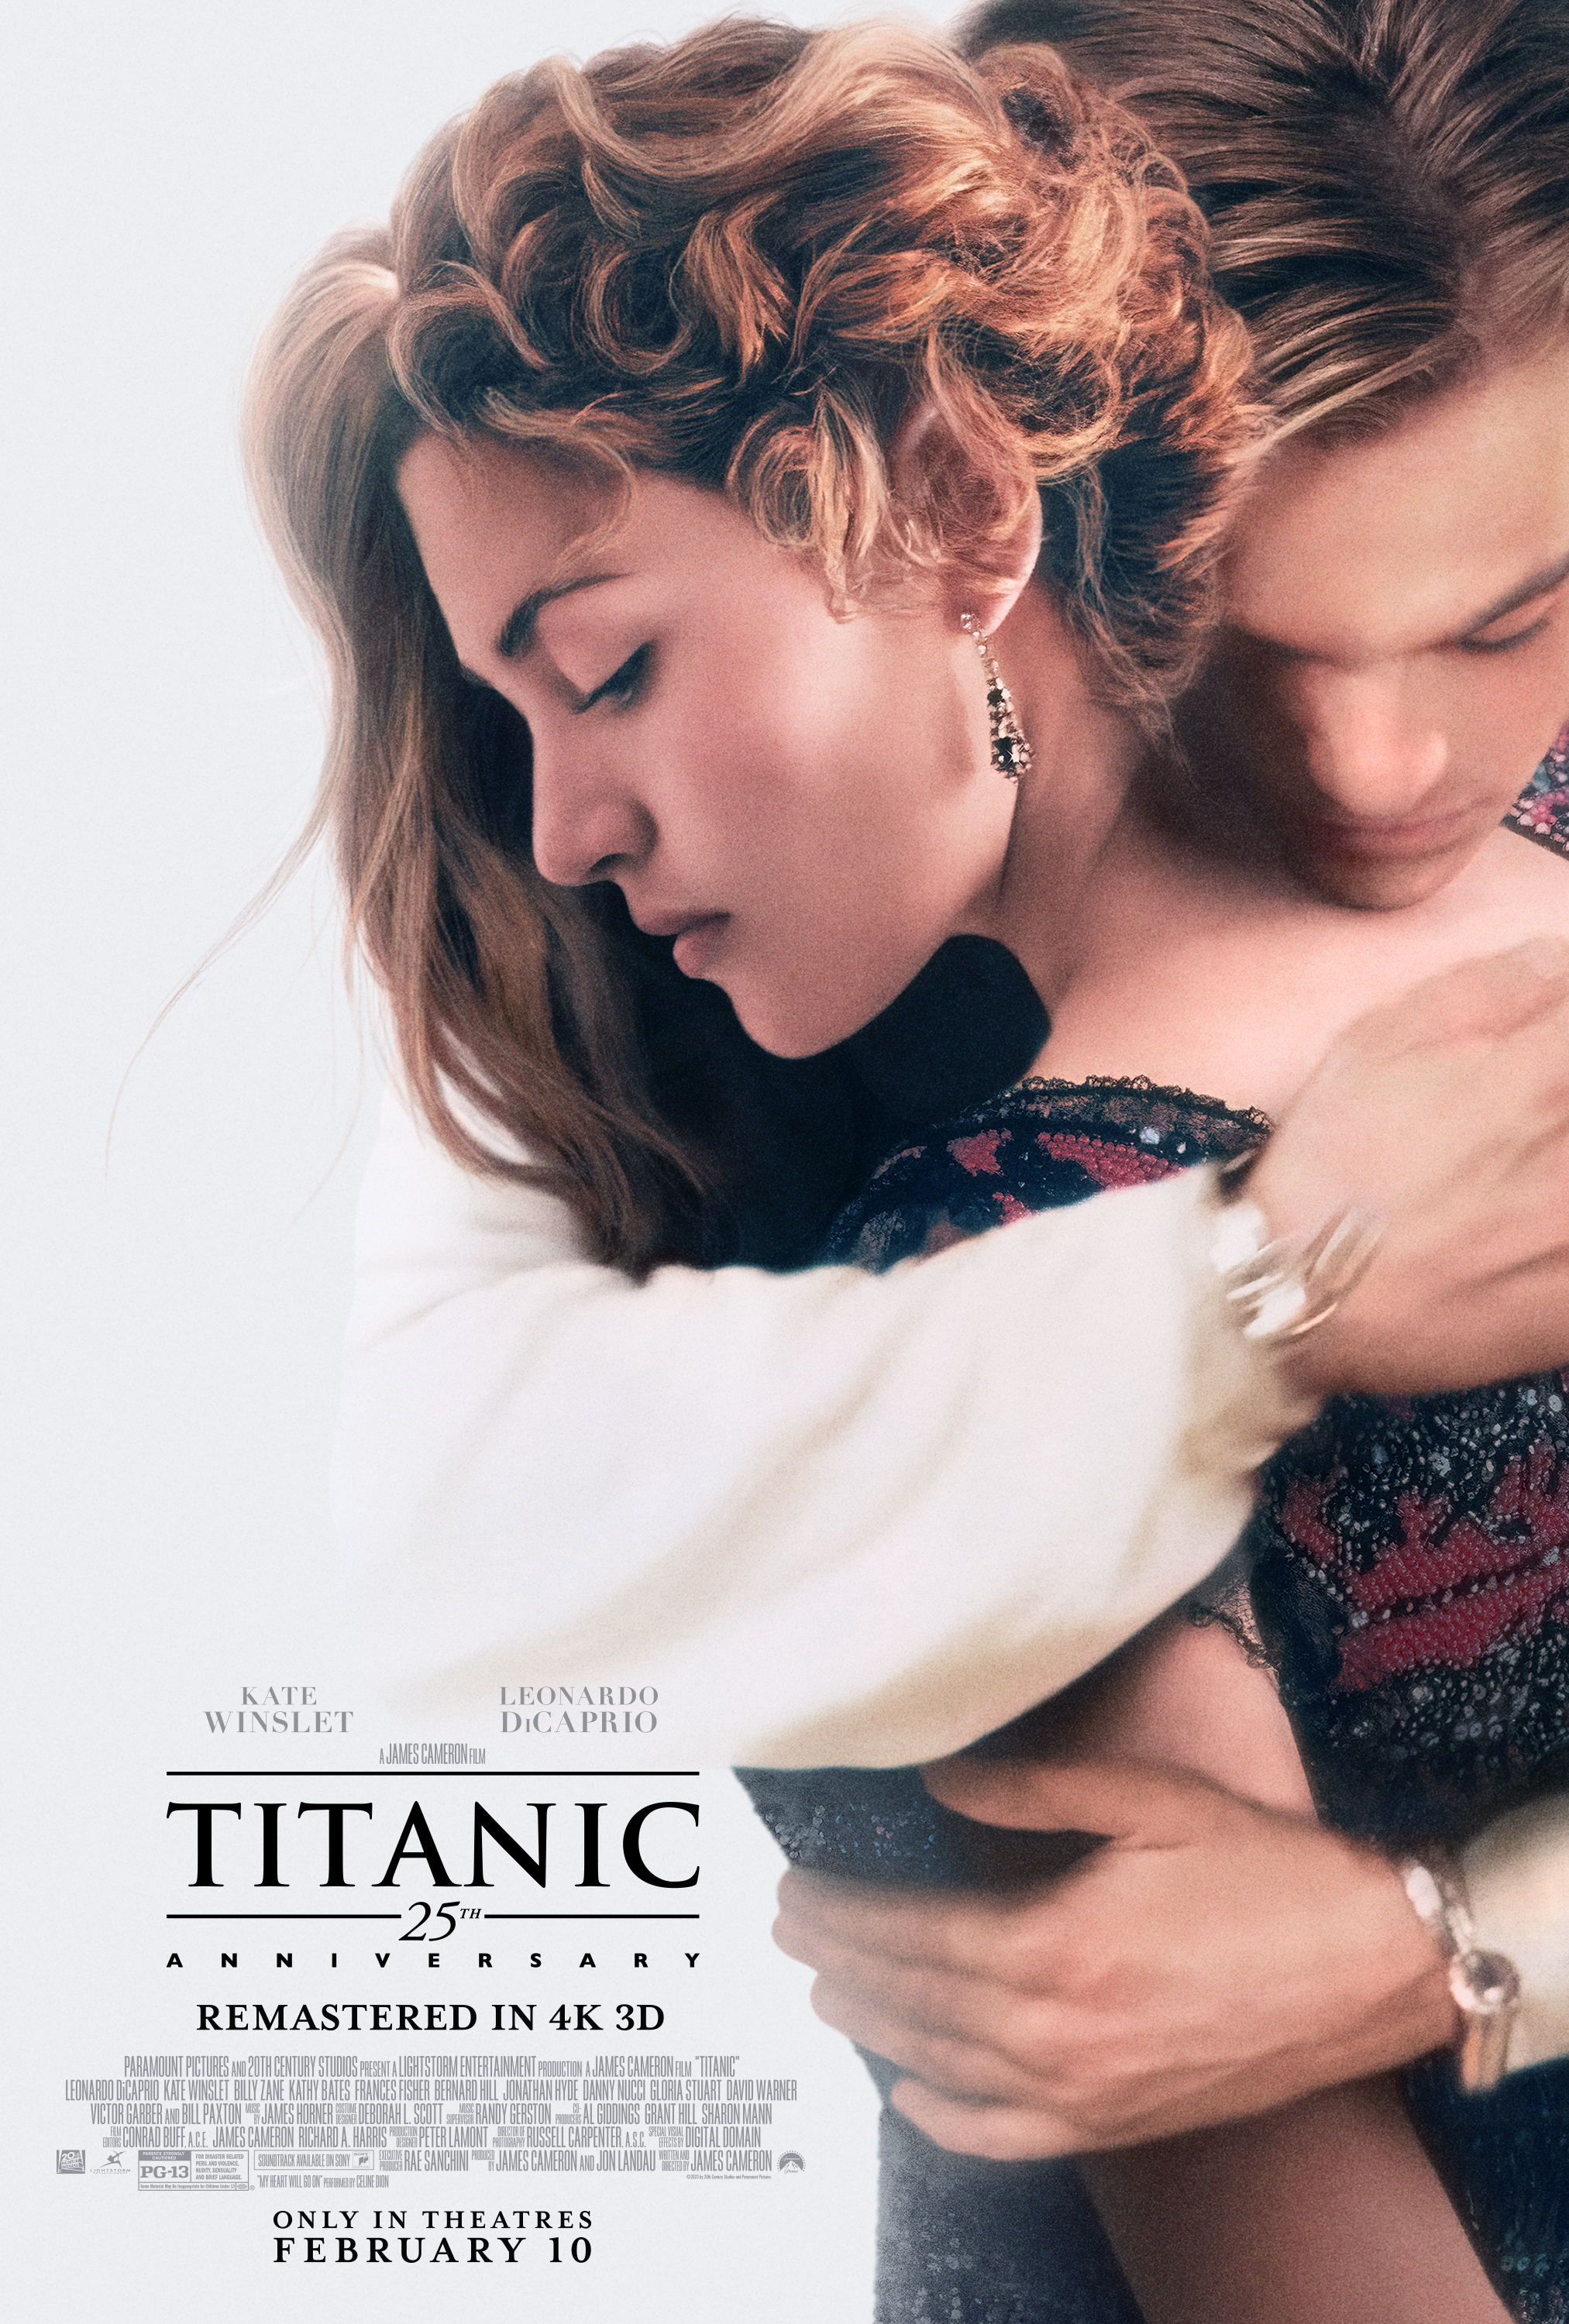 El poster del relanzamiento de "Titanic" a 25 años de su estreno